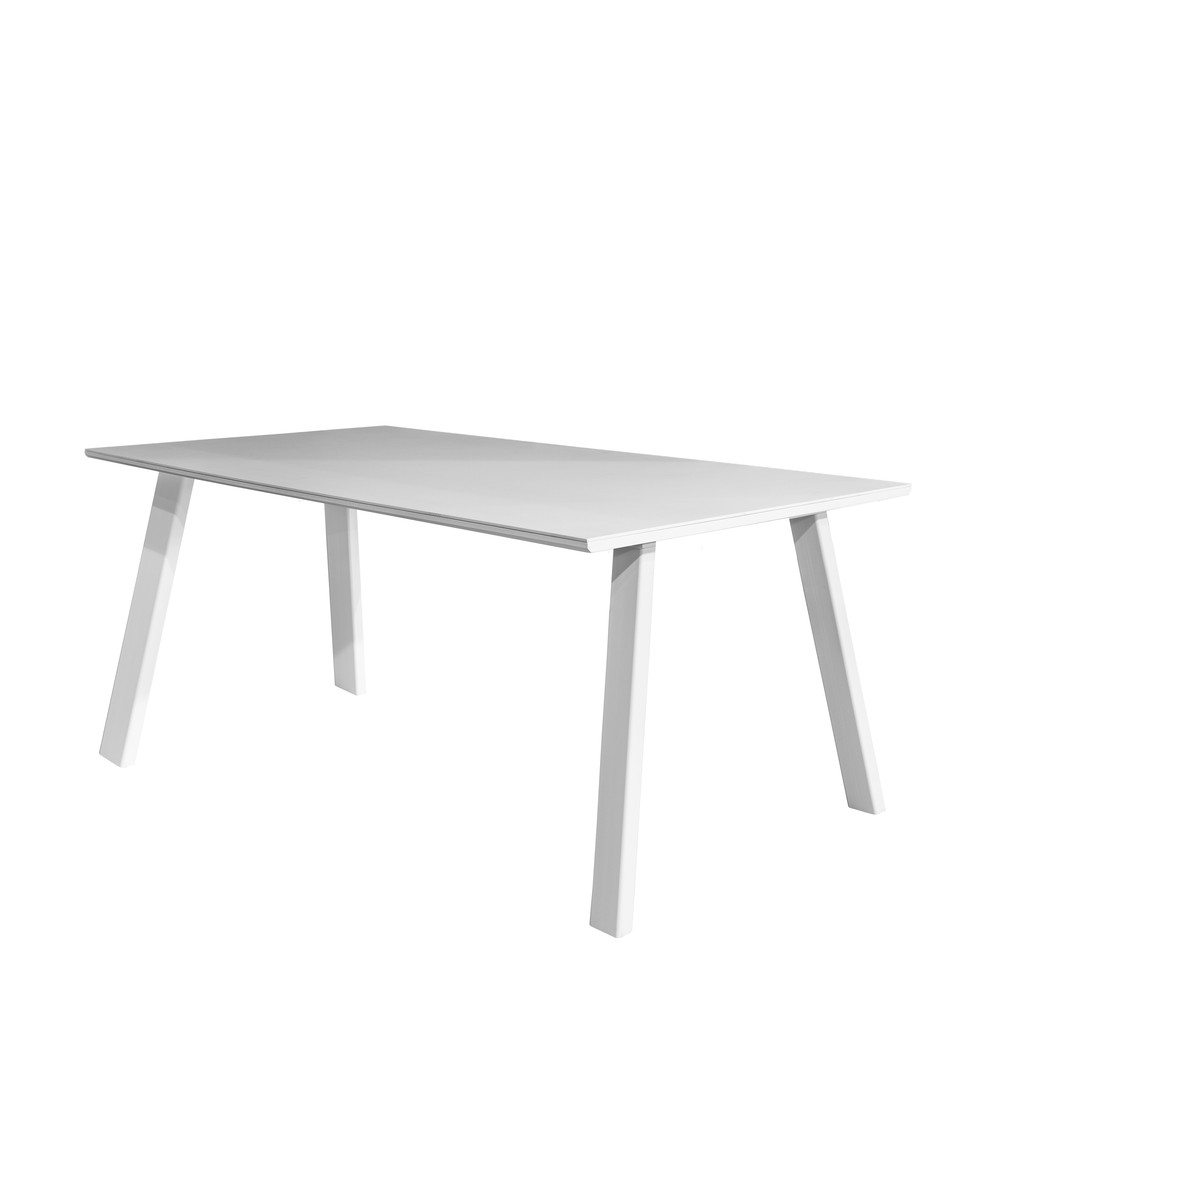   Table Spisa T06 Easy rectangle  140x100x75cm